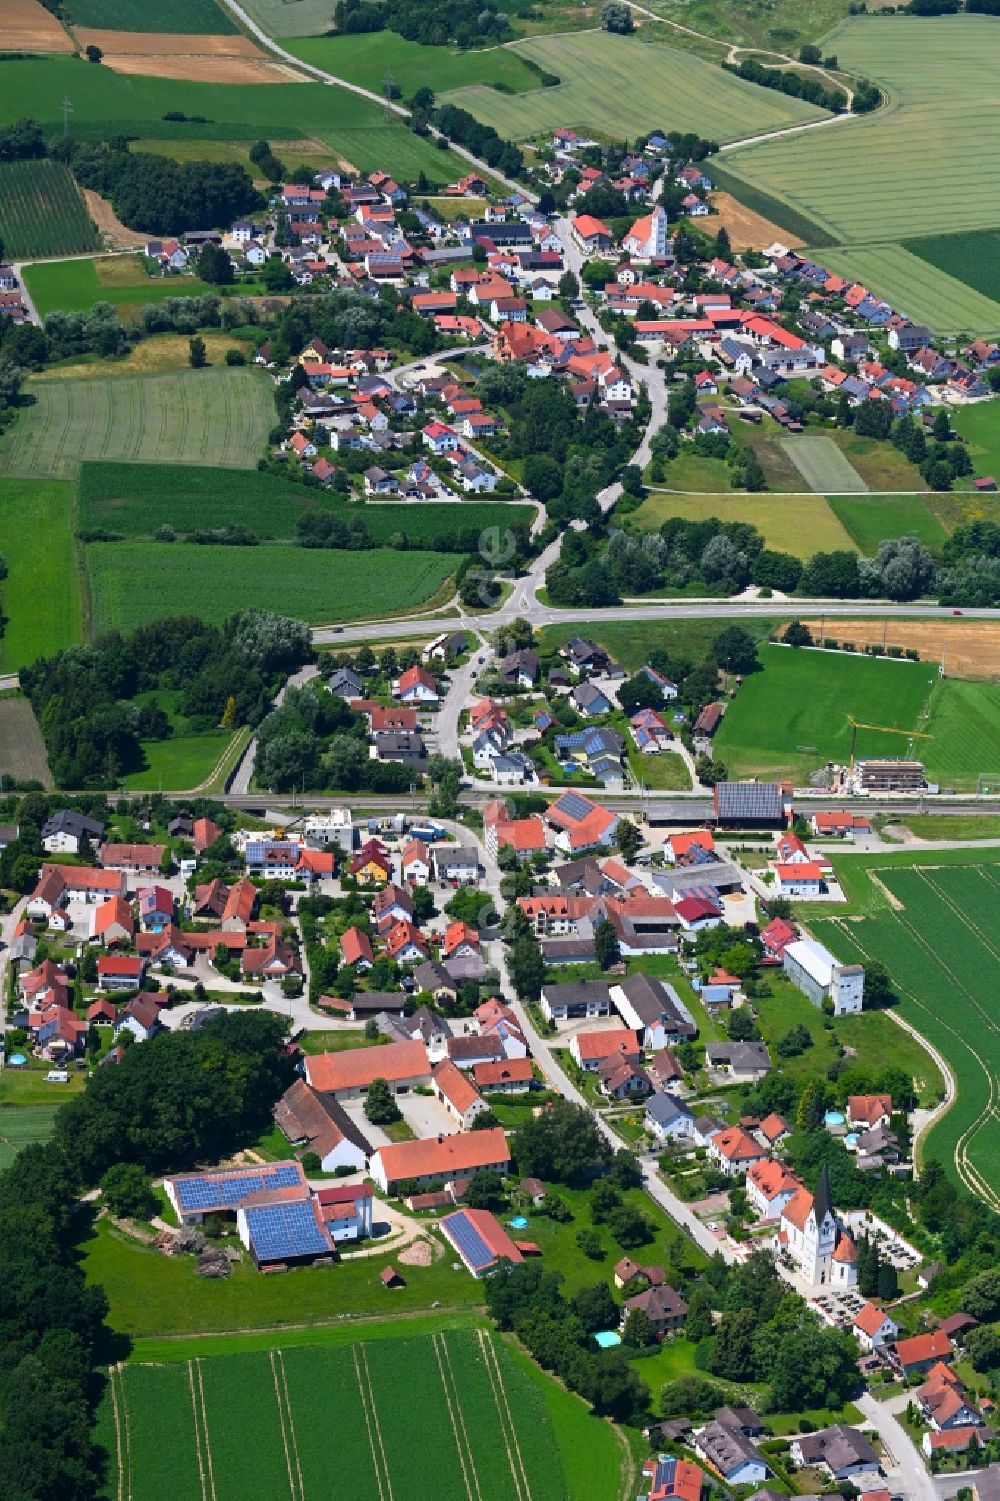 Uttenhofen von oben - Dorfkern am Feldrand in Uttenhofen im Bundesland Bayern, Deutschland